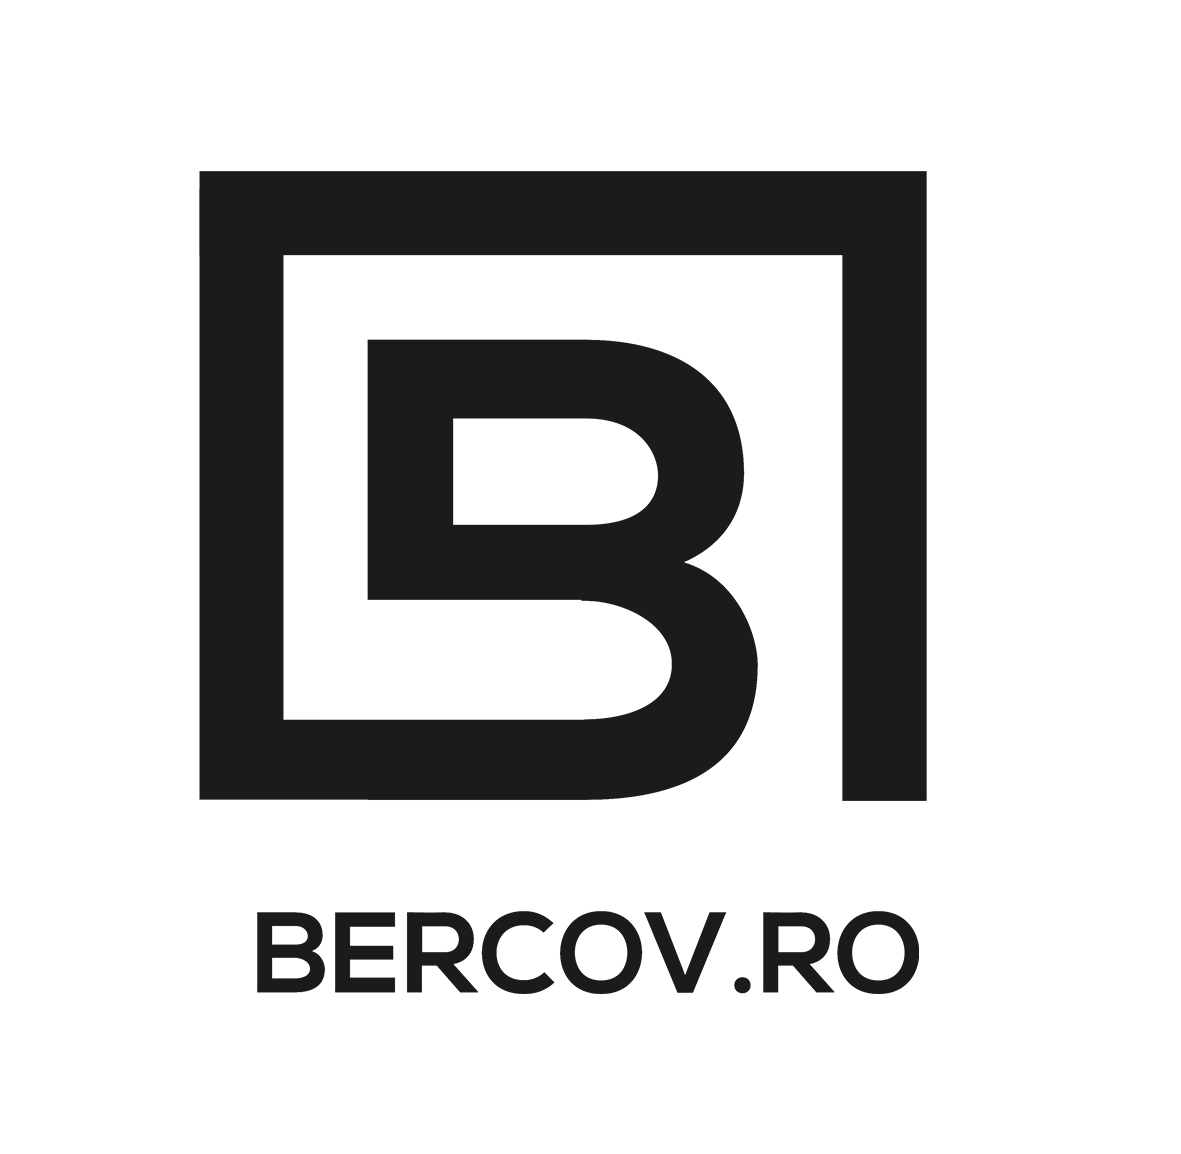 Bercov Marketing and Content Creators